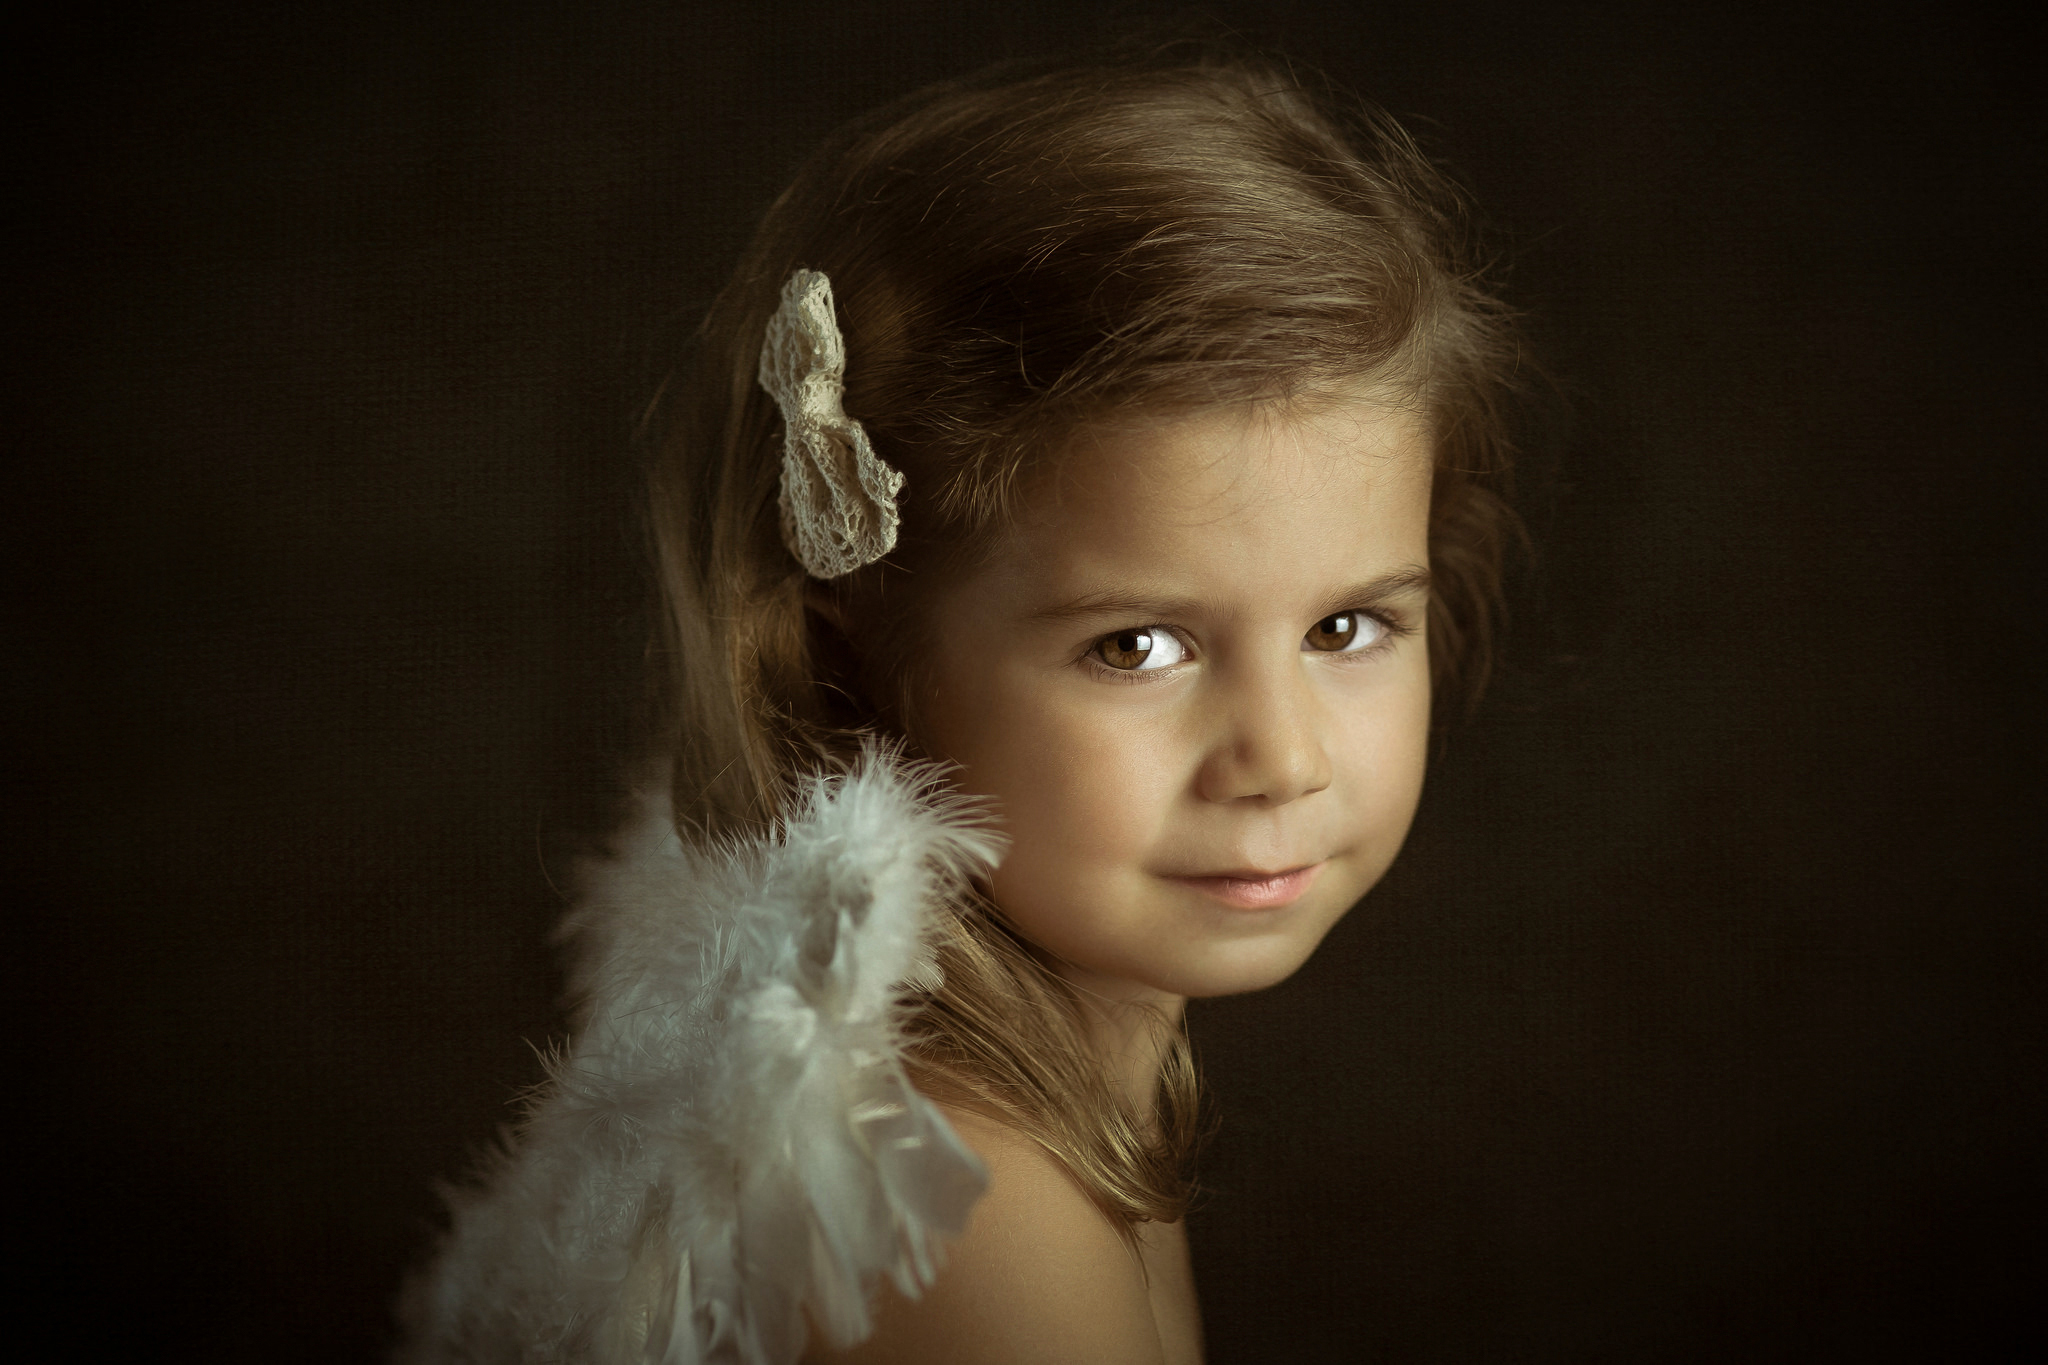 Nik little angel. Литтл Энджел. Портрет девочки. Детский фотопортрет. Серьезная маленькая девочка.